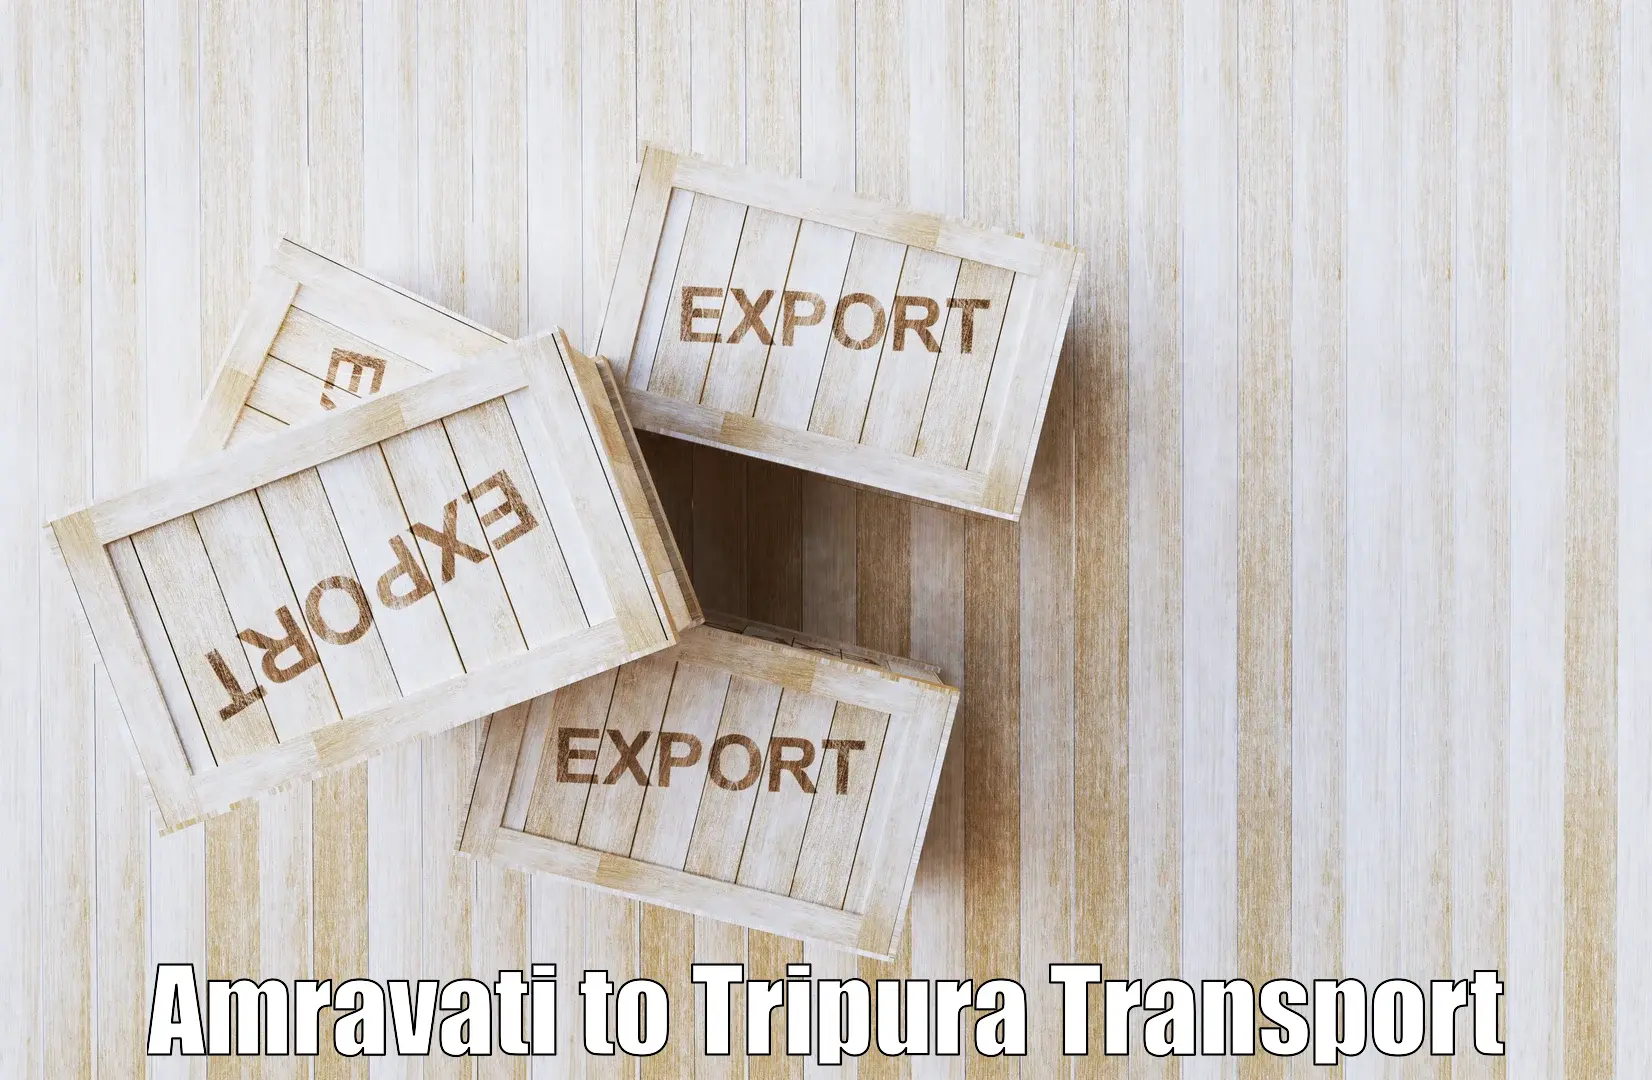 Best transport services in India Amravati to Amarpur